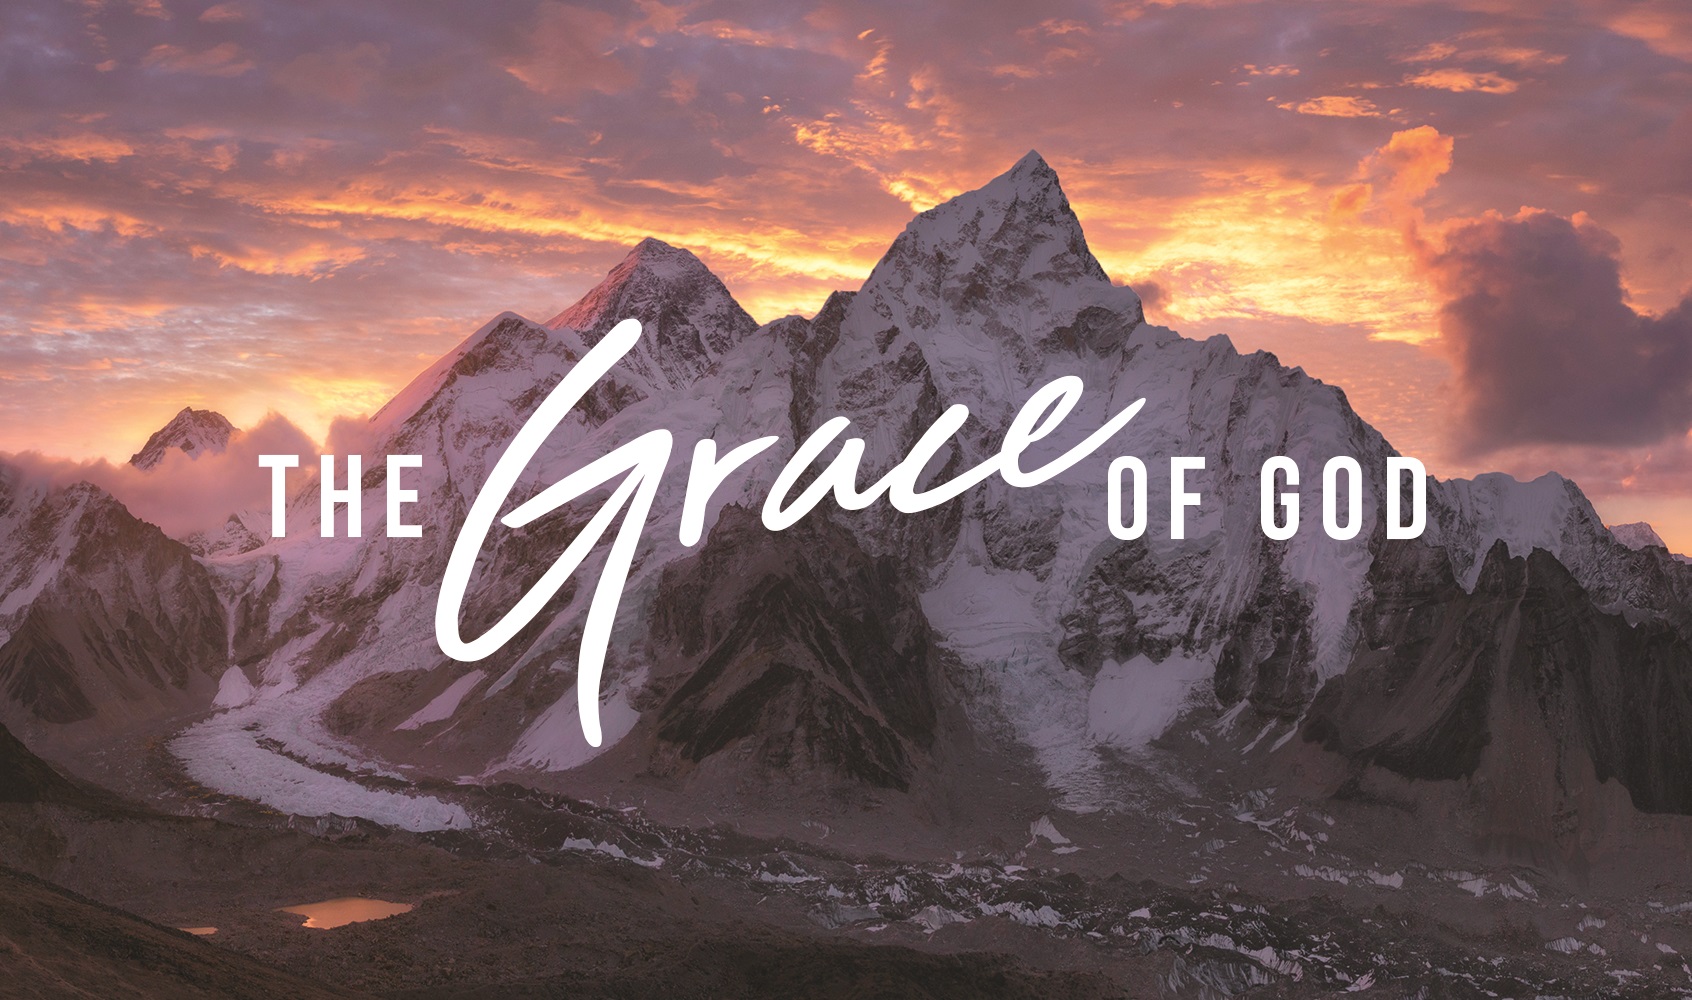 The Grace of God